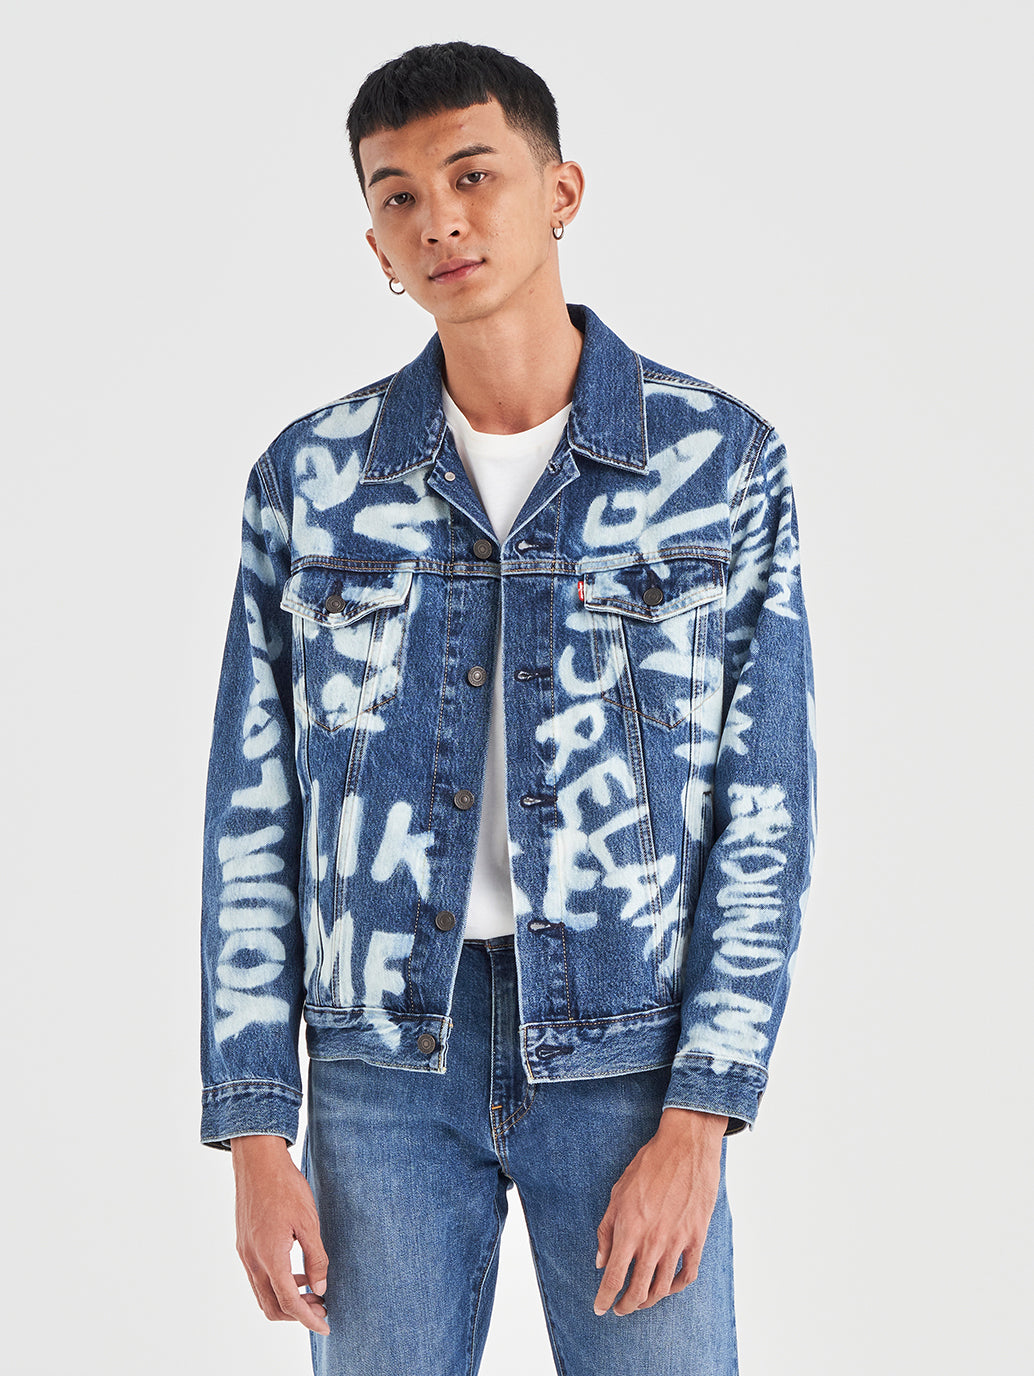 Men's Graphic PrintBlue Spread Collar Jackets